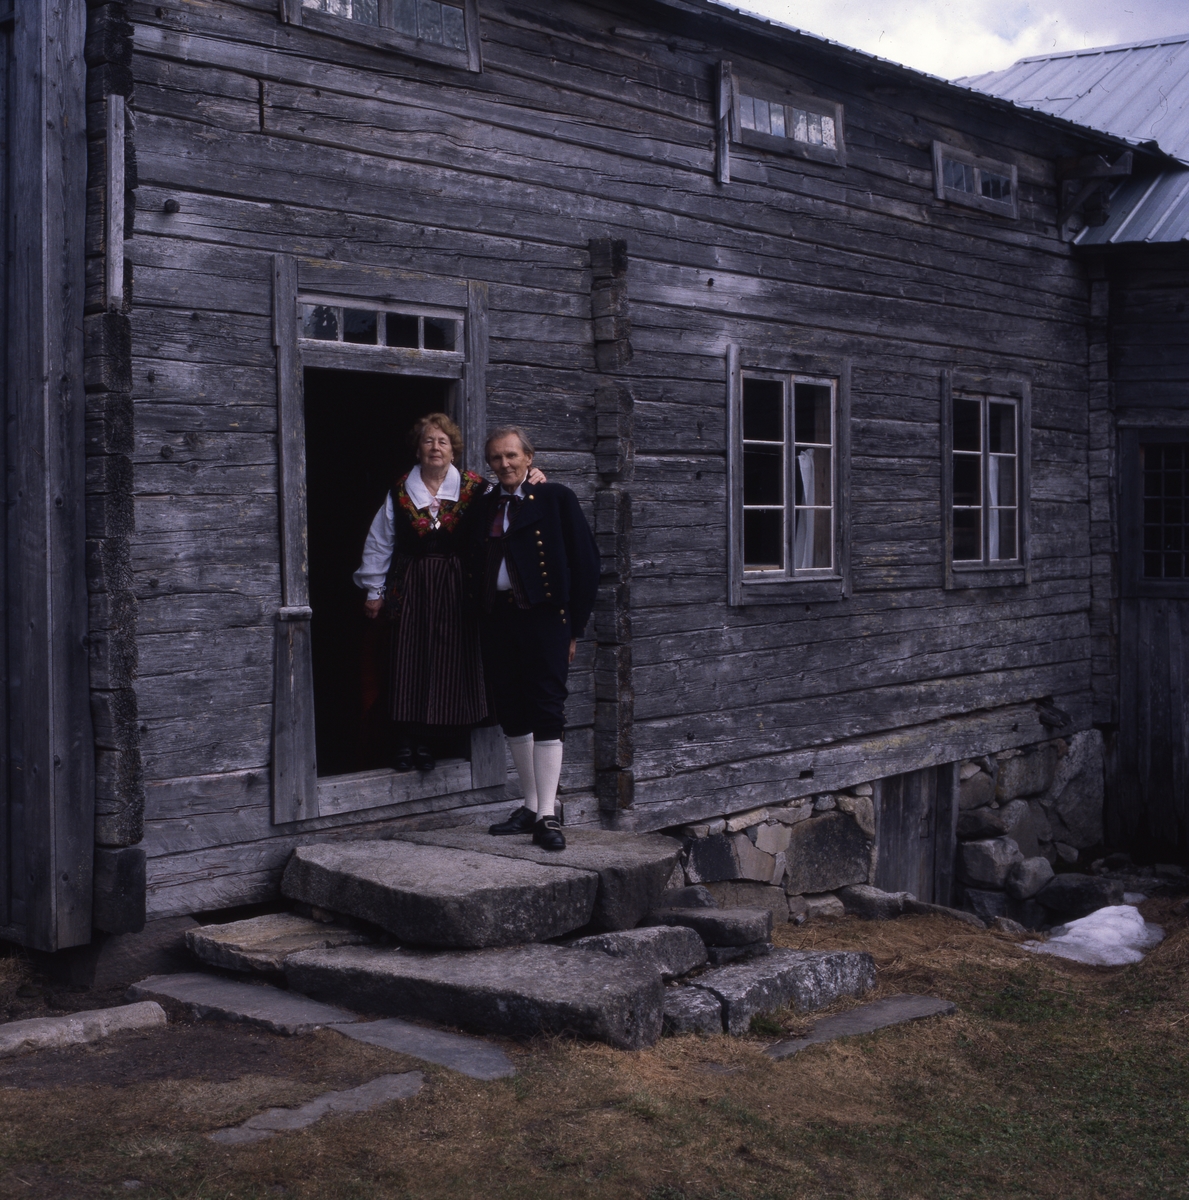 Hilding och Adéle Mickelsson i hembygdsdräkt på trappan till
gården Ersk-Mats vid GH hembygdsförbunds årsmöte i Hassela, lördag 24 maj 1997.